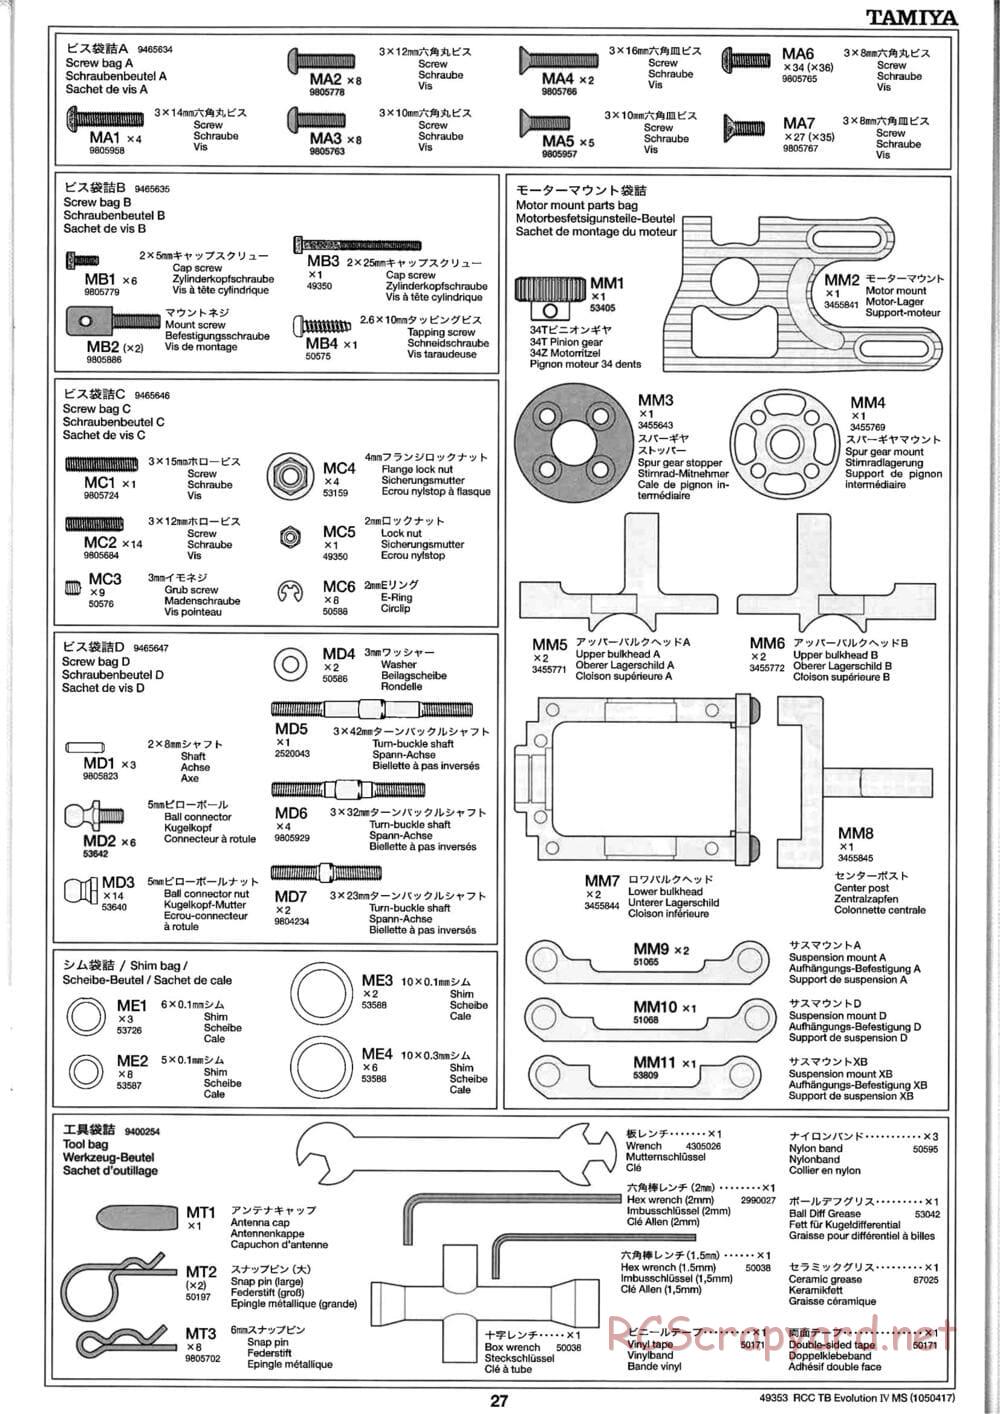 Tamiya - TB Evolution IV MS Chassis - Manual - Page 27